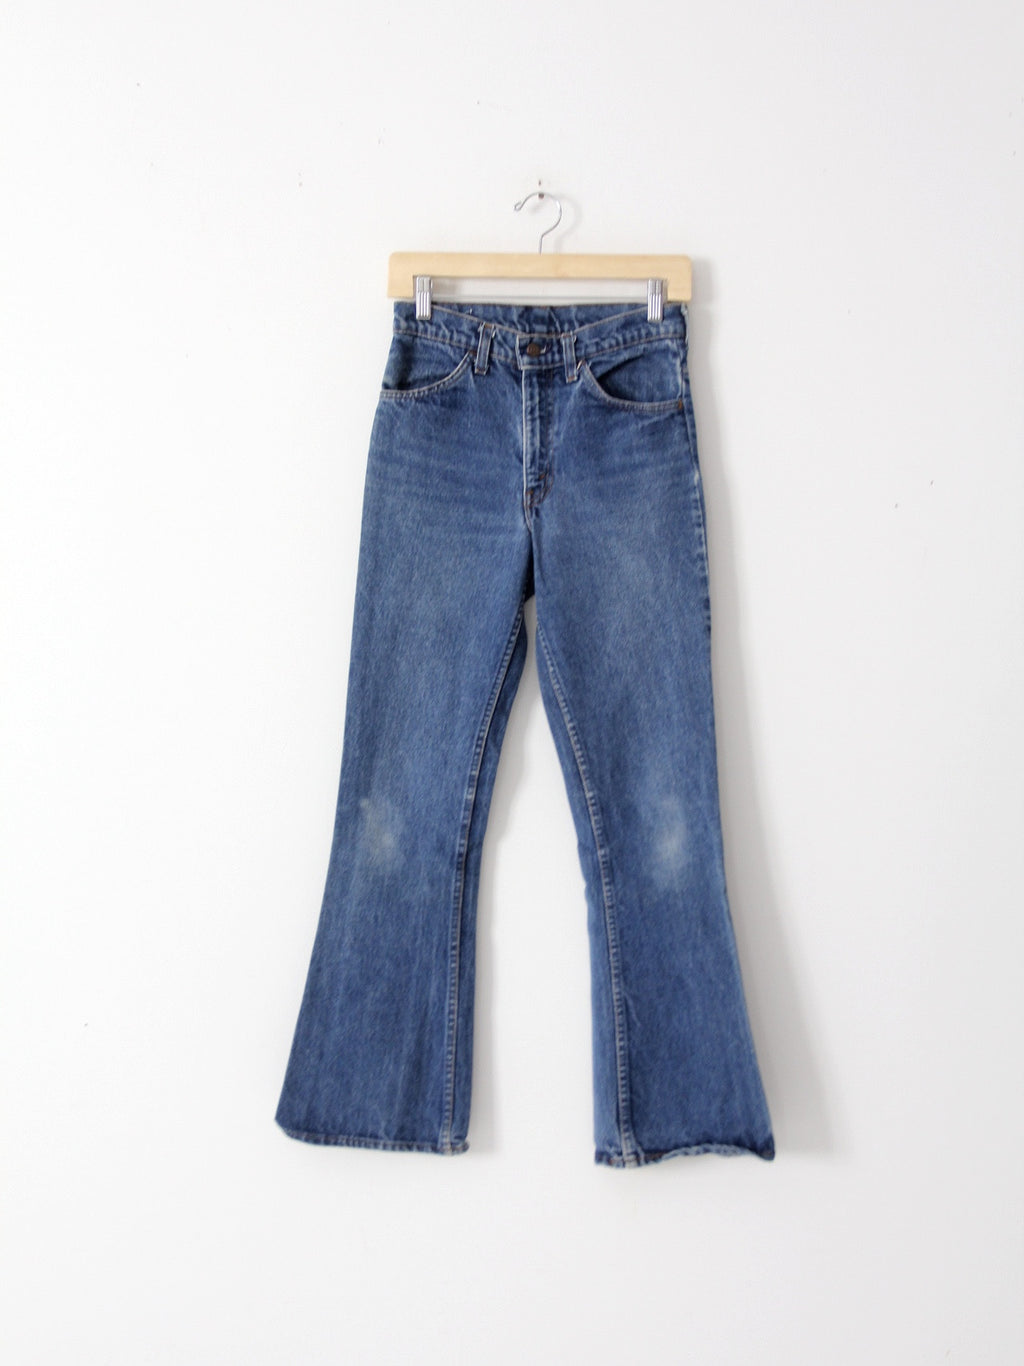 Levis 646 vintage denim jeans, 28 x 31 – 86 Vintage